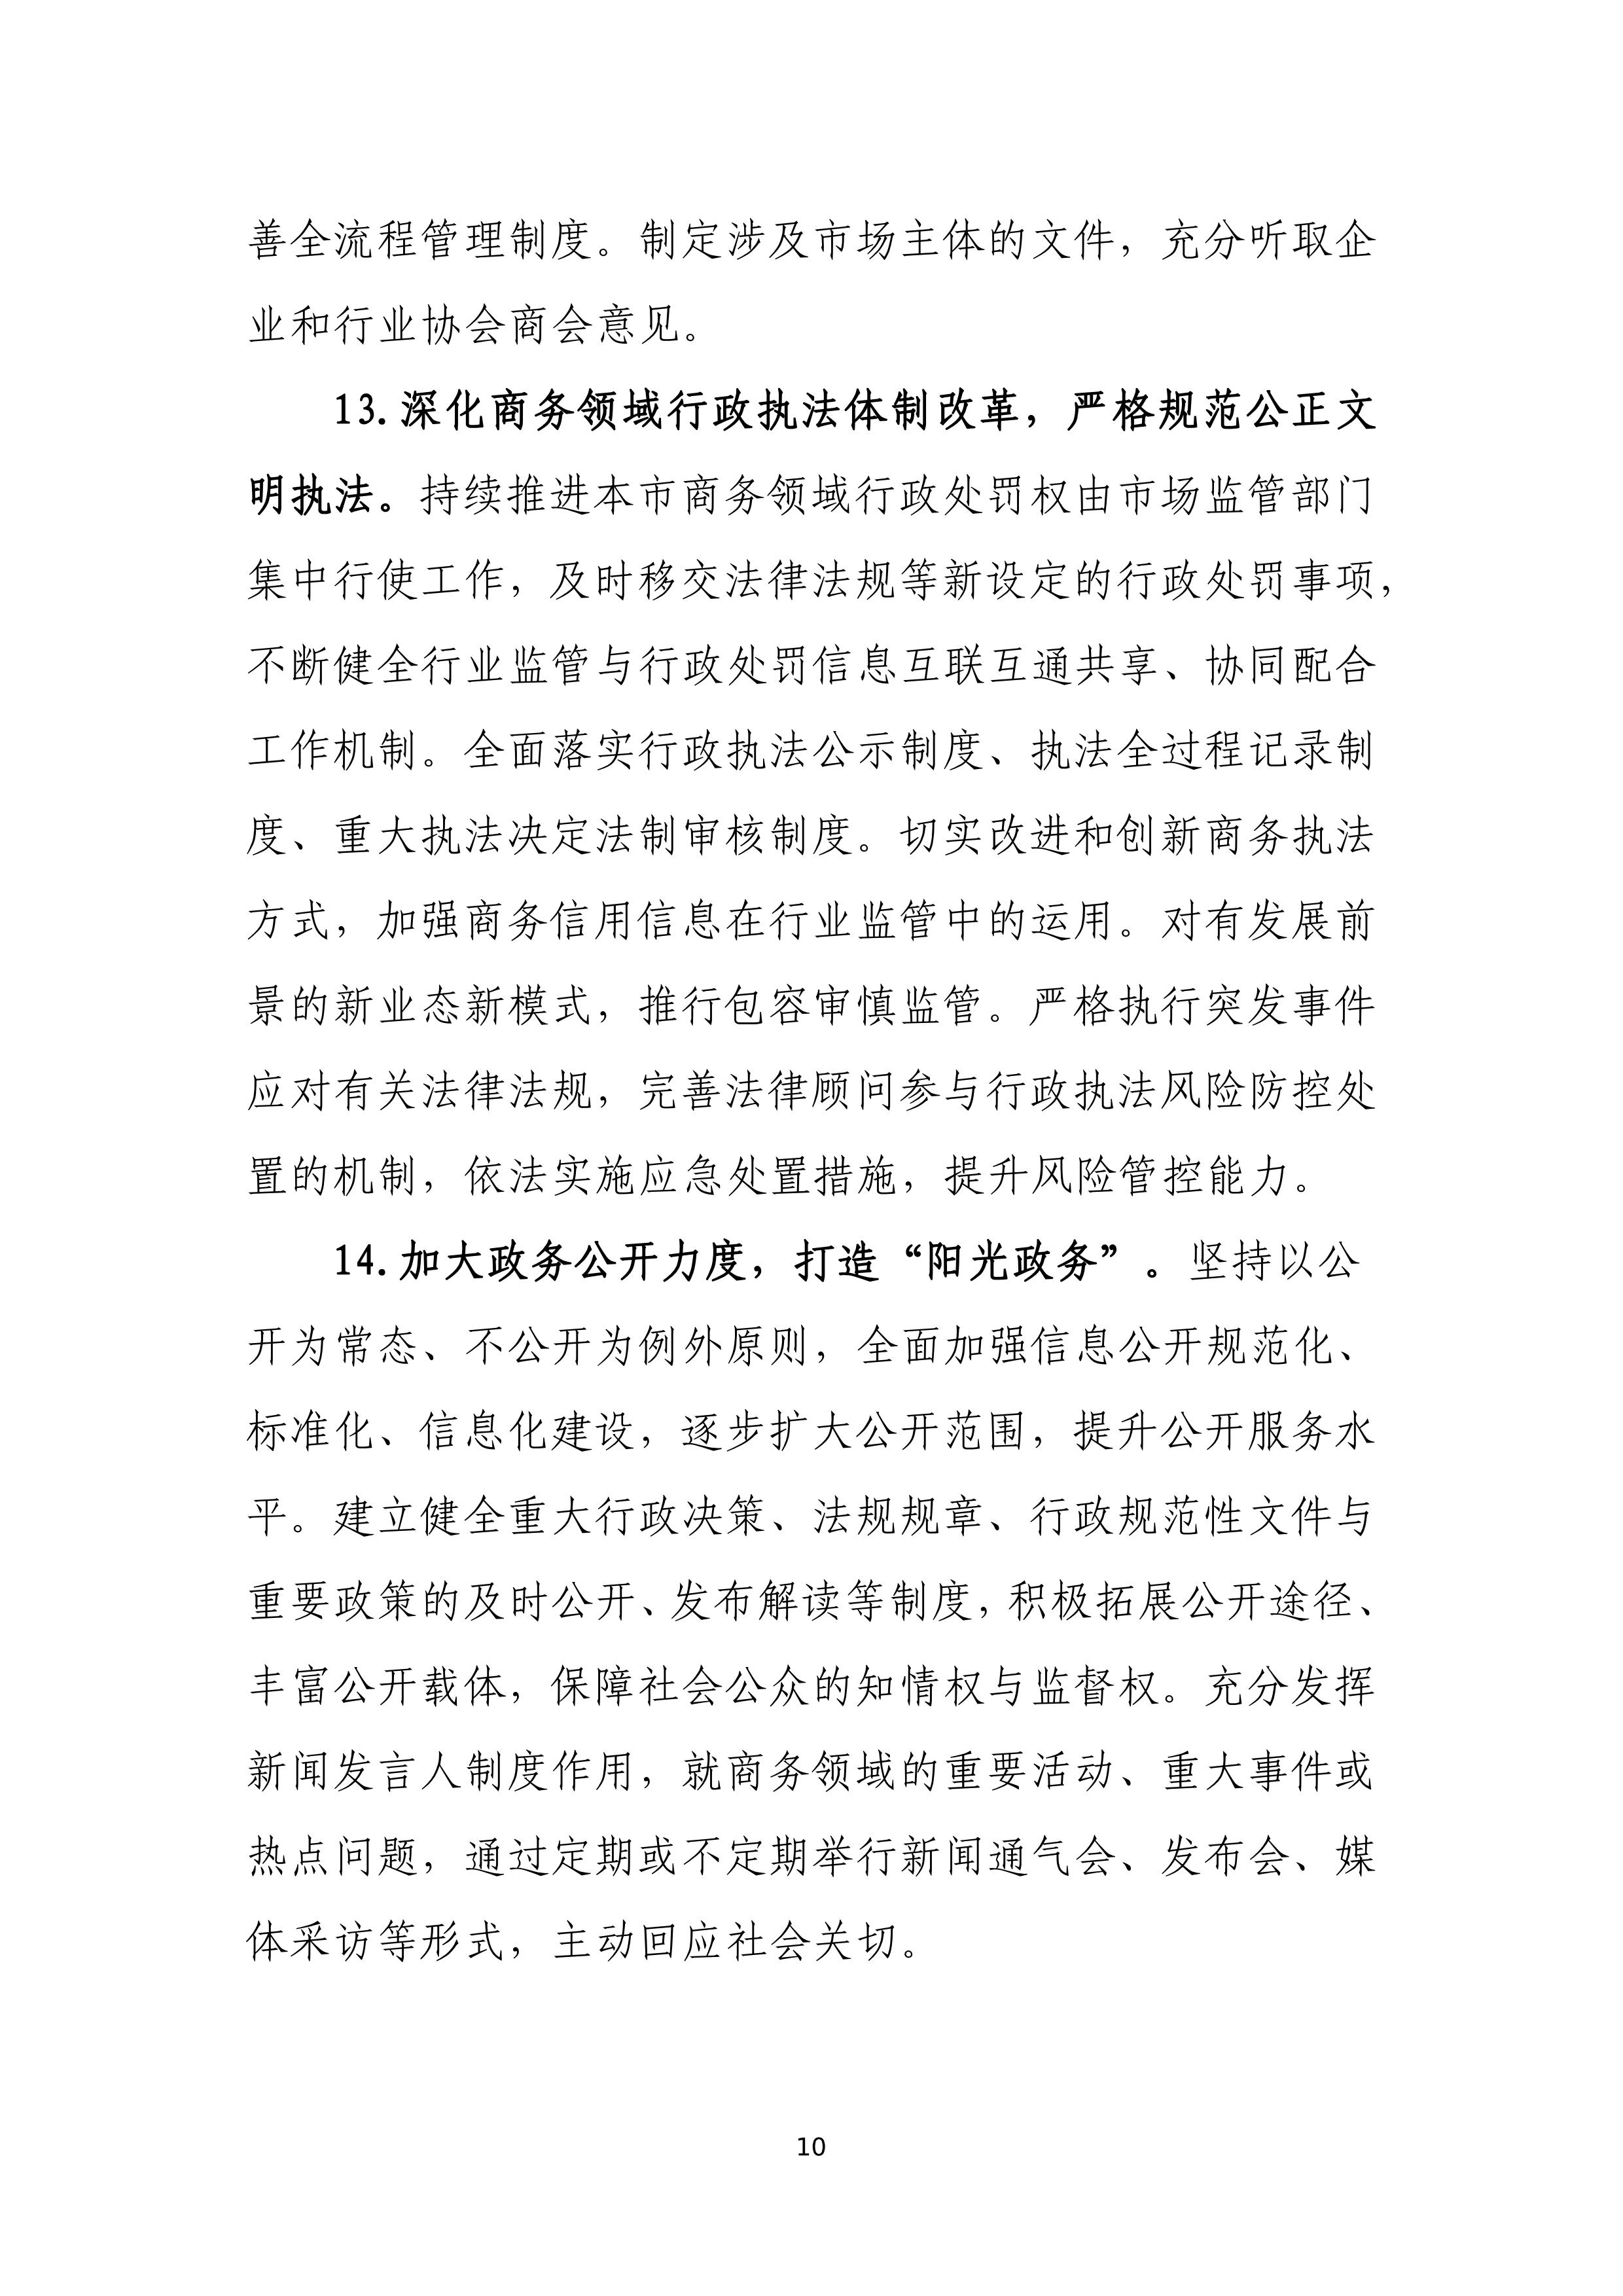 “十四五”时期上海商务法治建设规划_10.jpg